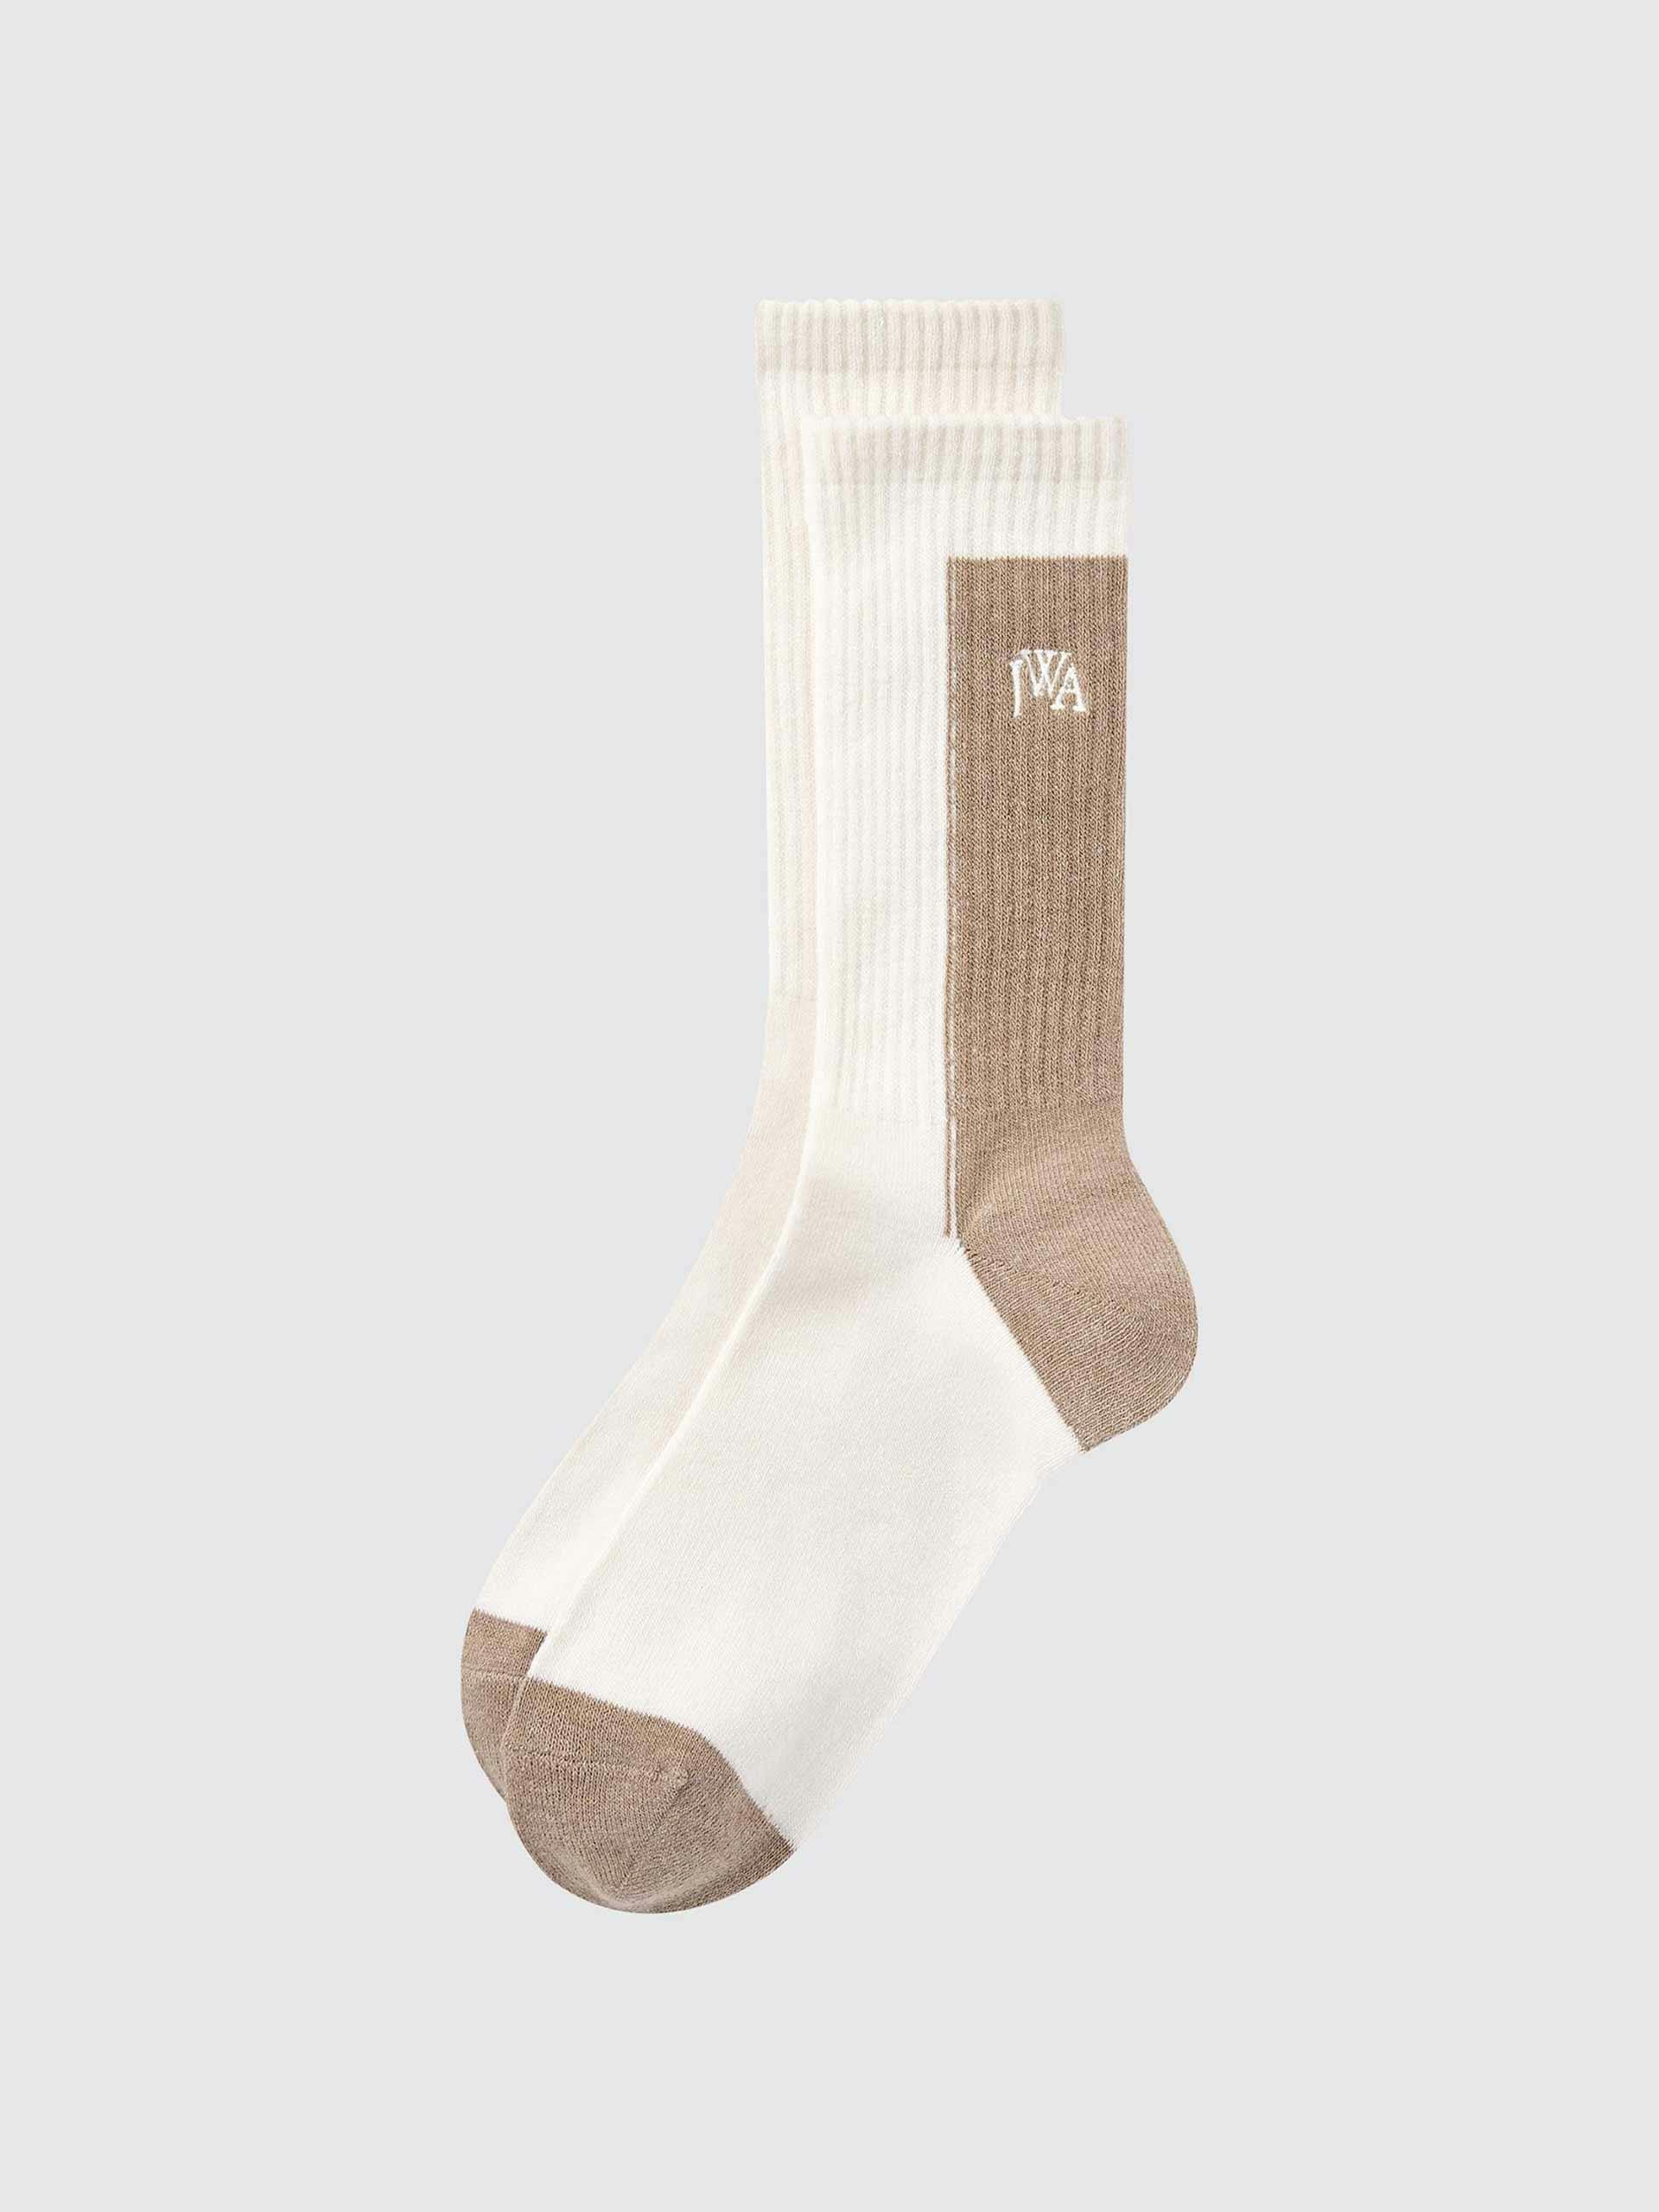 White and beige socks